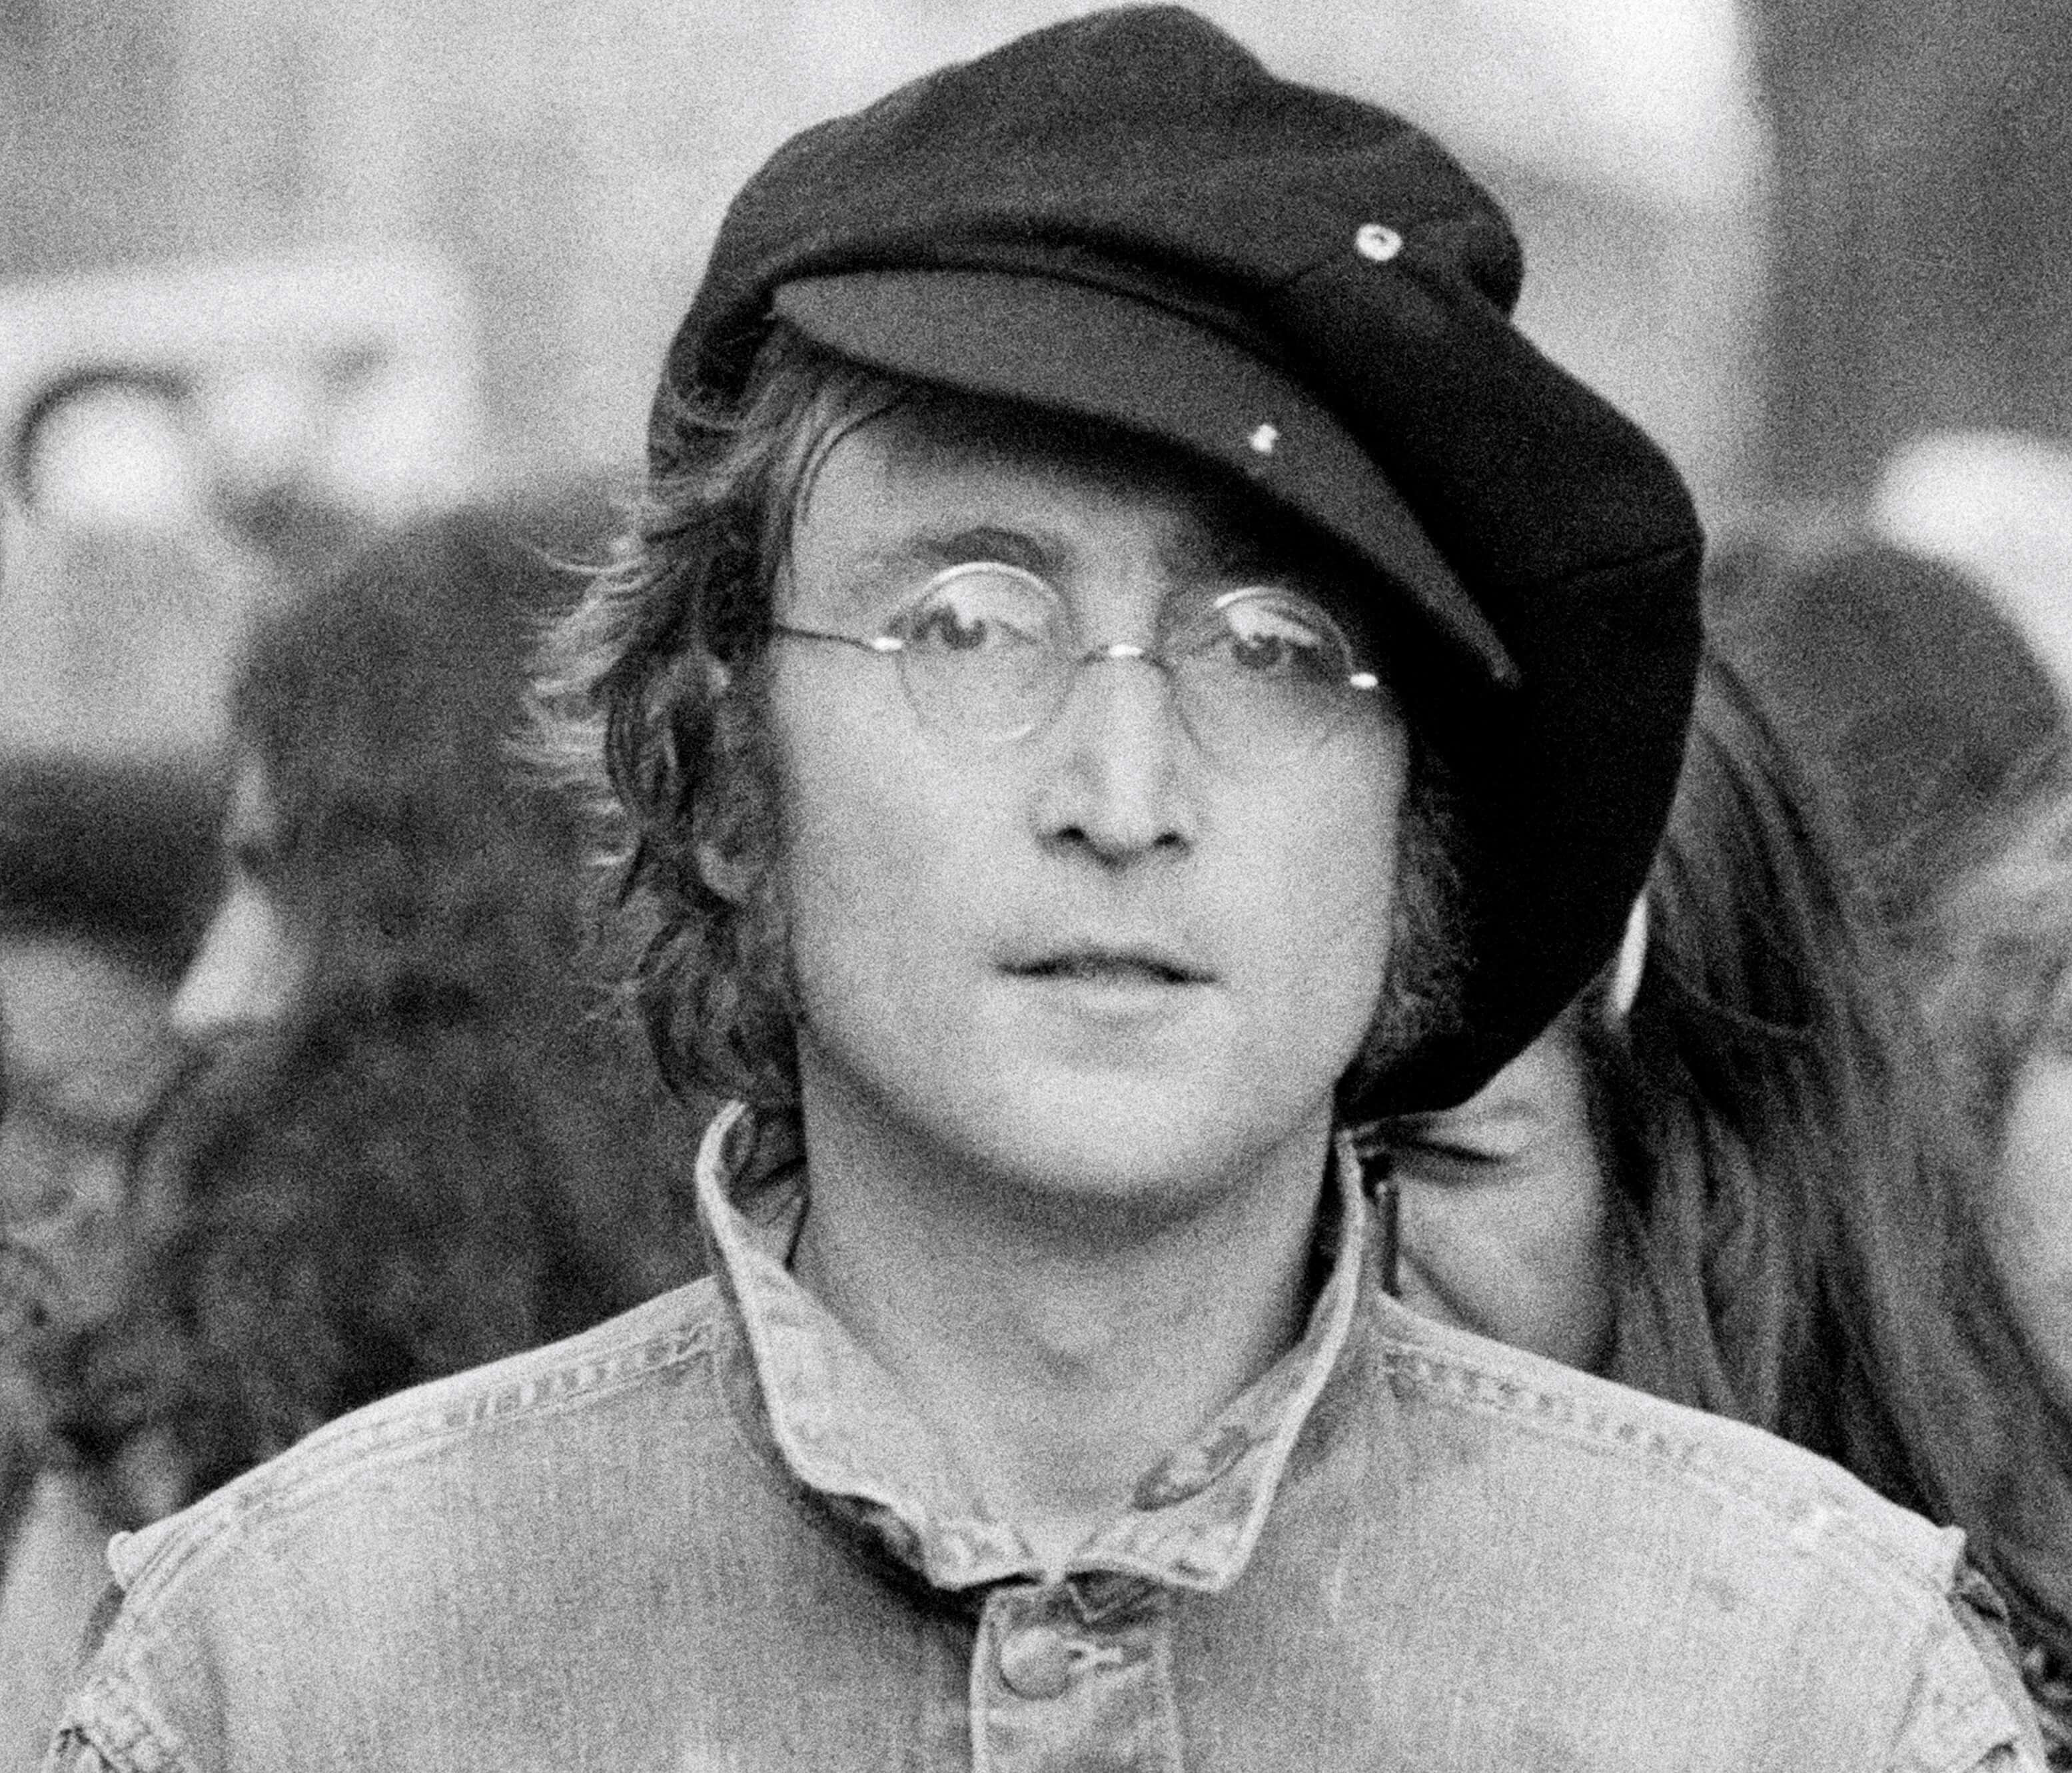 'Double Fantasy' artist John Lennon wearing a hat